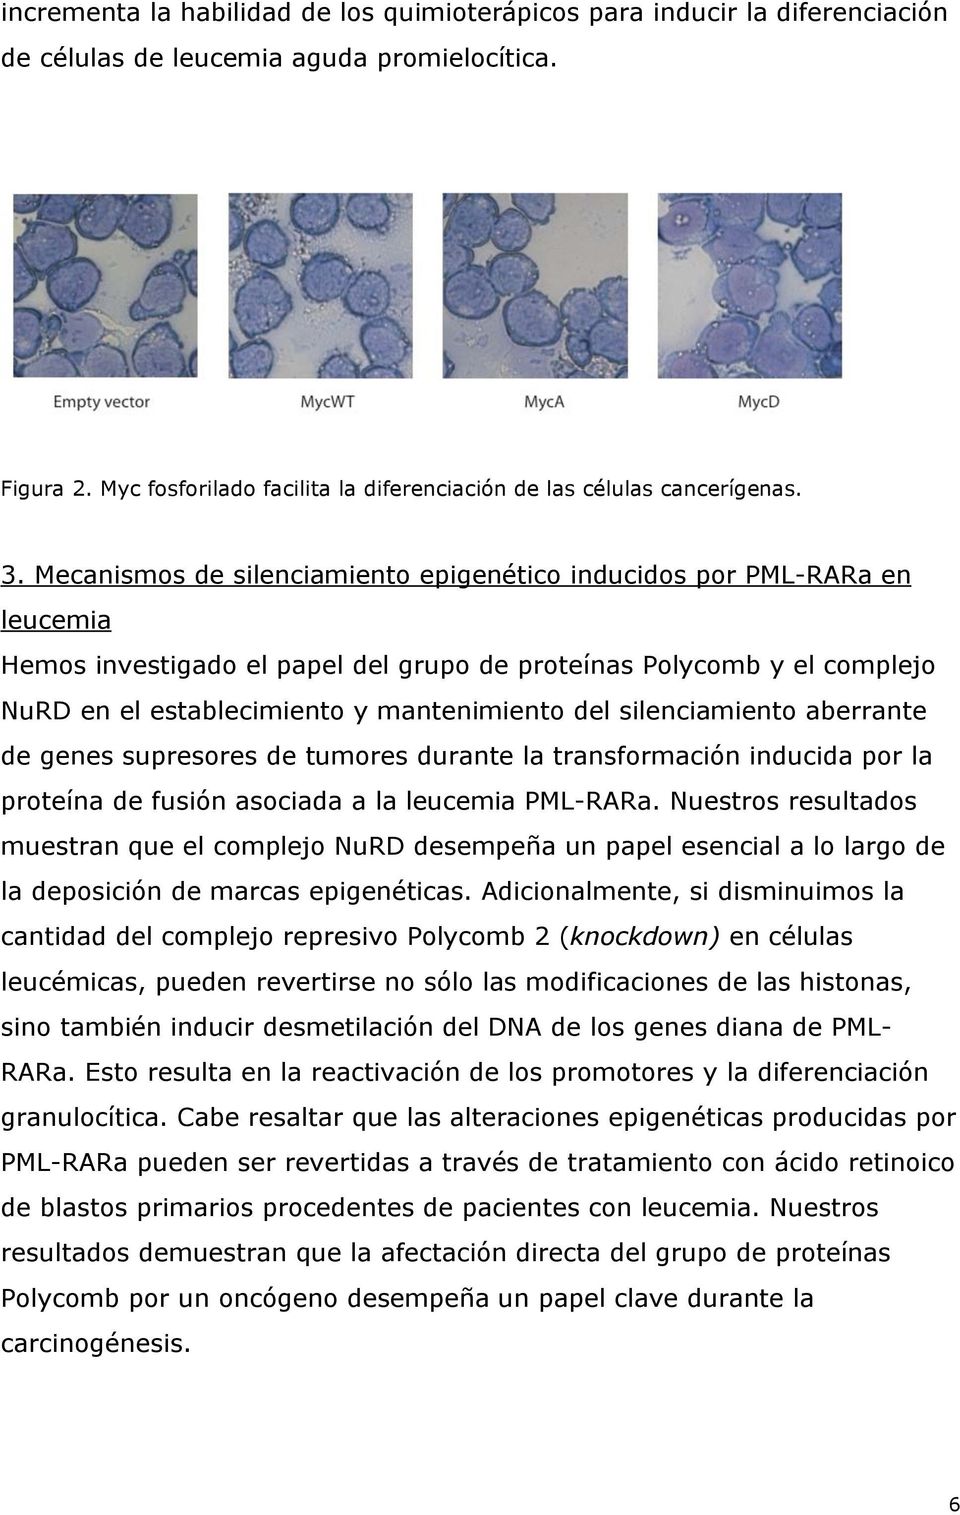 Mecanismos de silenciamiento epigenético inducidos por PML-RARa en leucemia Hemos investigado el papel del grupo de proteínas Polycomb y el complejo NuRD en el establecimiento y mantenimiento del